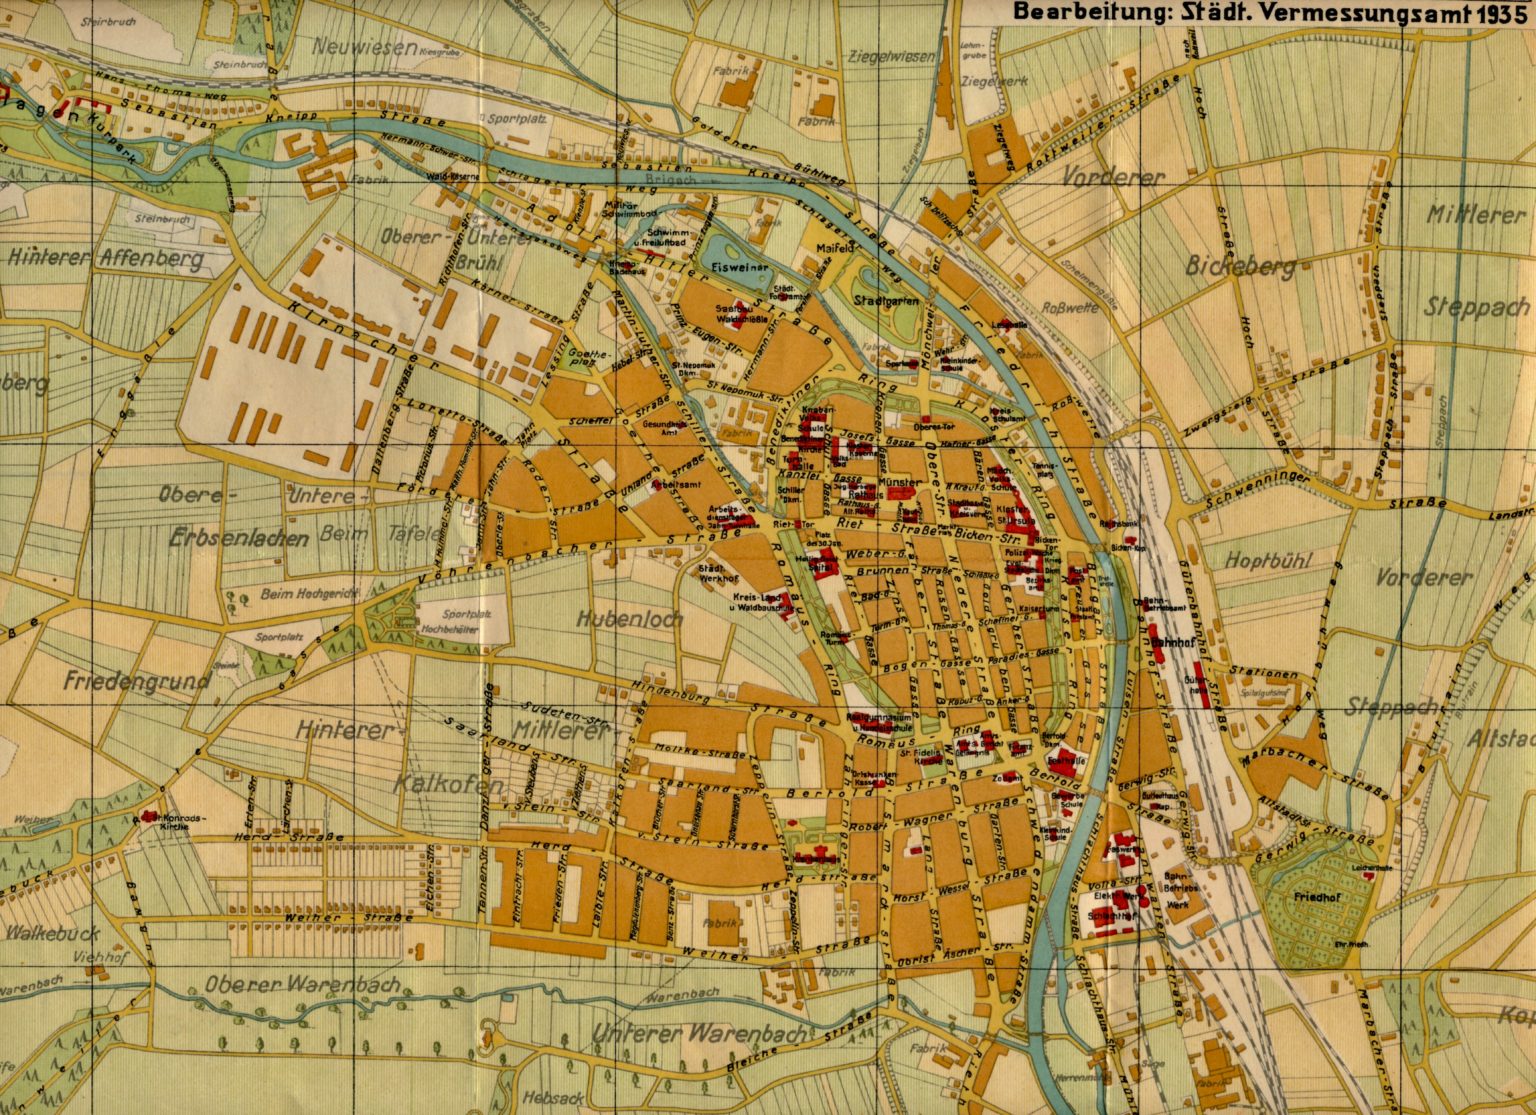 Villingen Kreishauptstadt mit Stadtplan 1935, Verzeichnis der Straßen